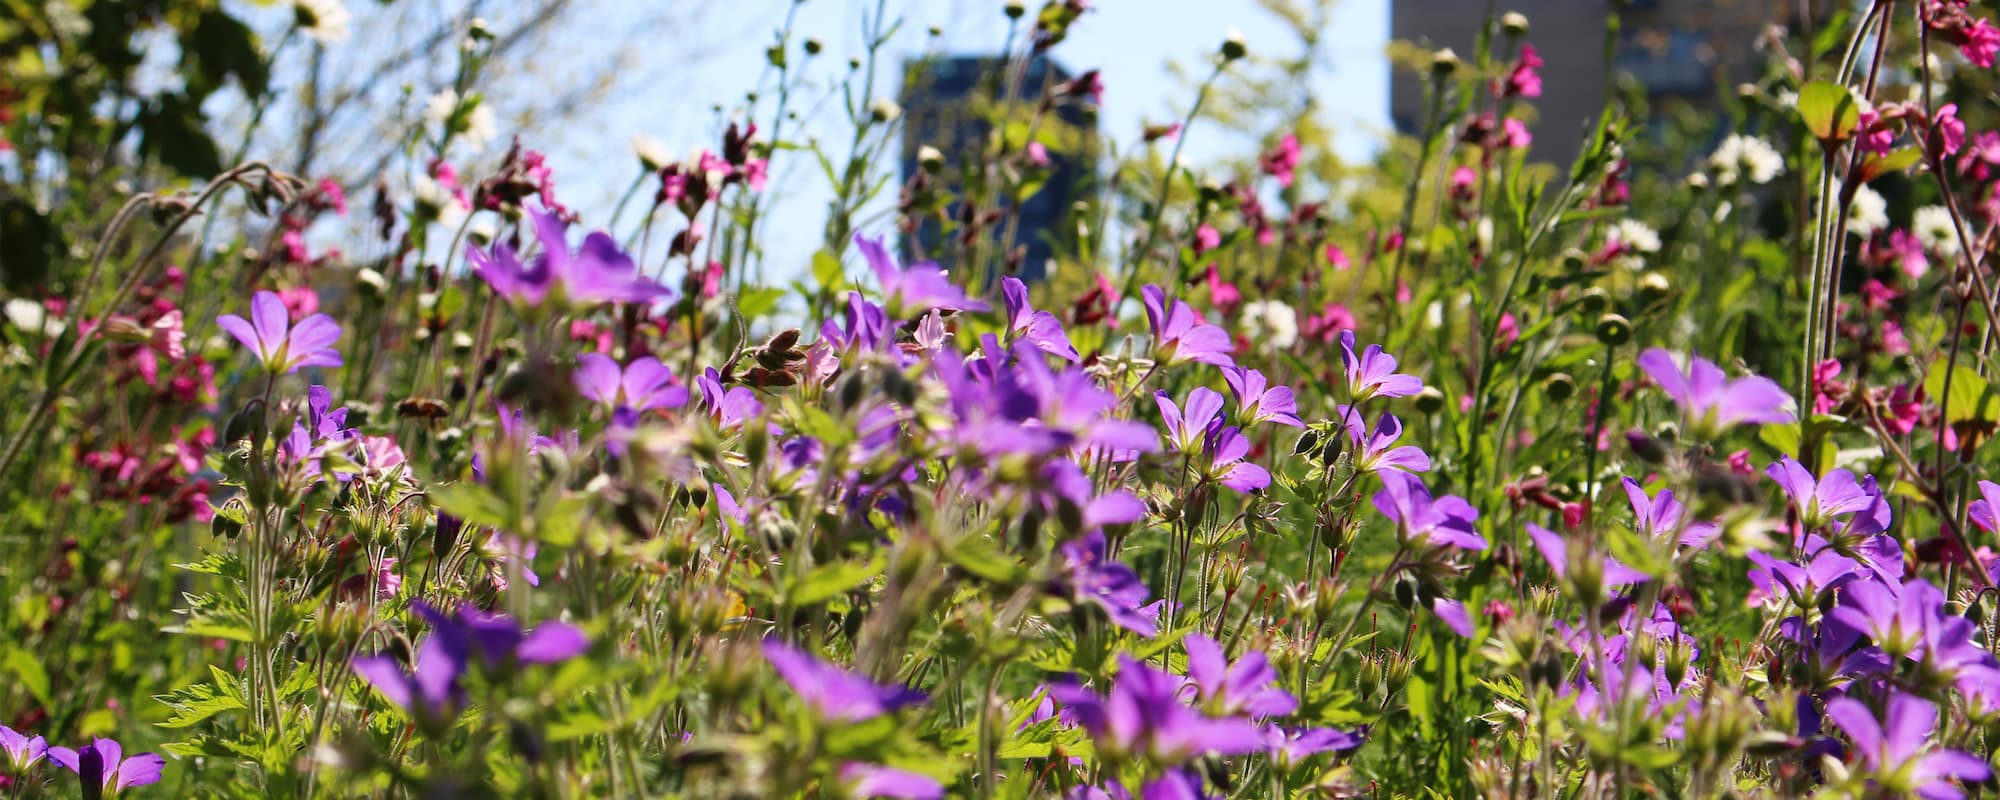 Insektvenlig beplantning spiller en central rolle i Ørestads bynatur og parkudtryk. På billedet ses blomster i Byparken.